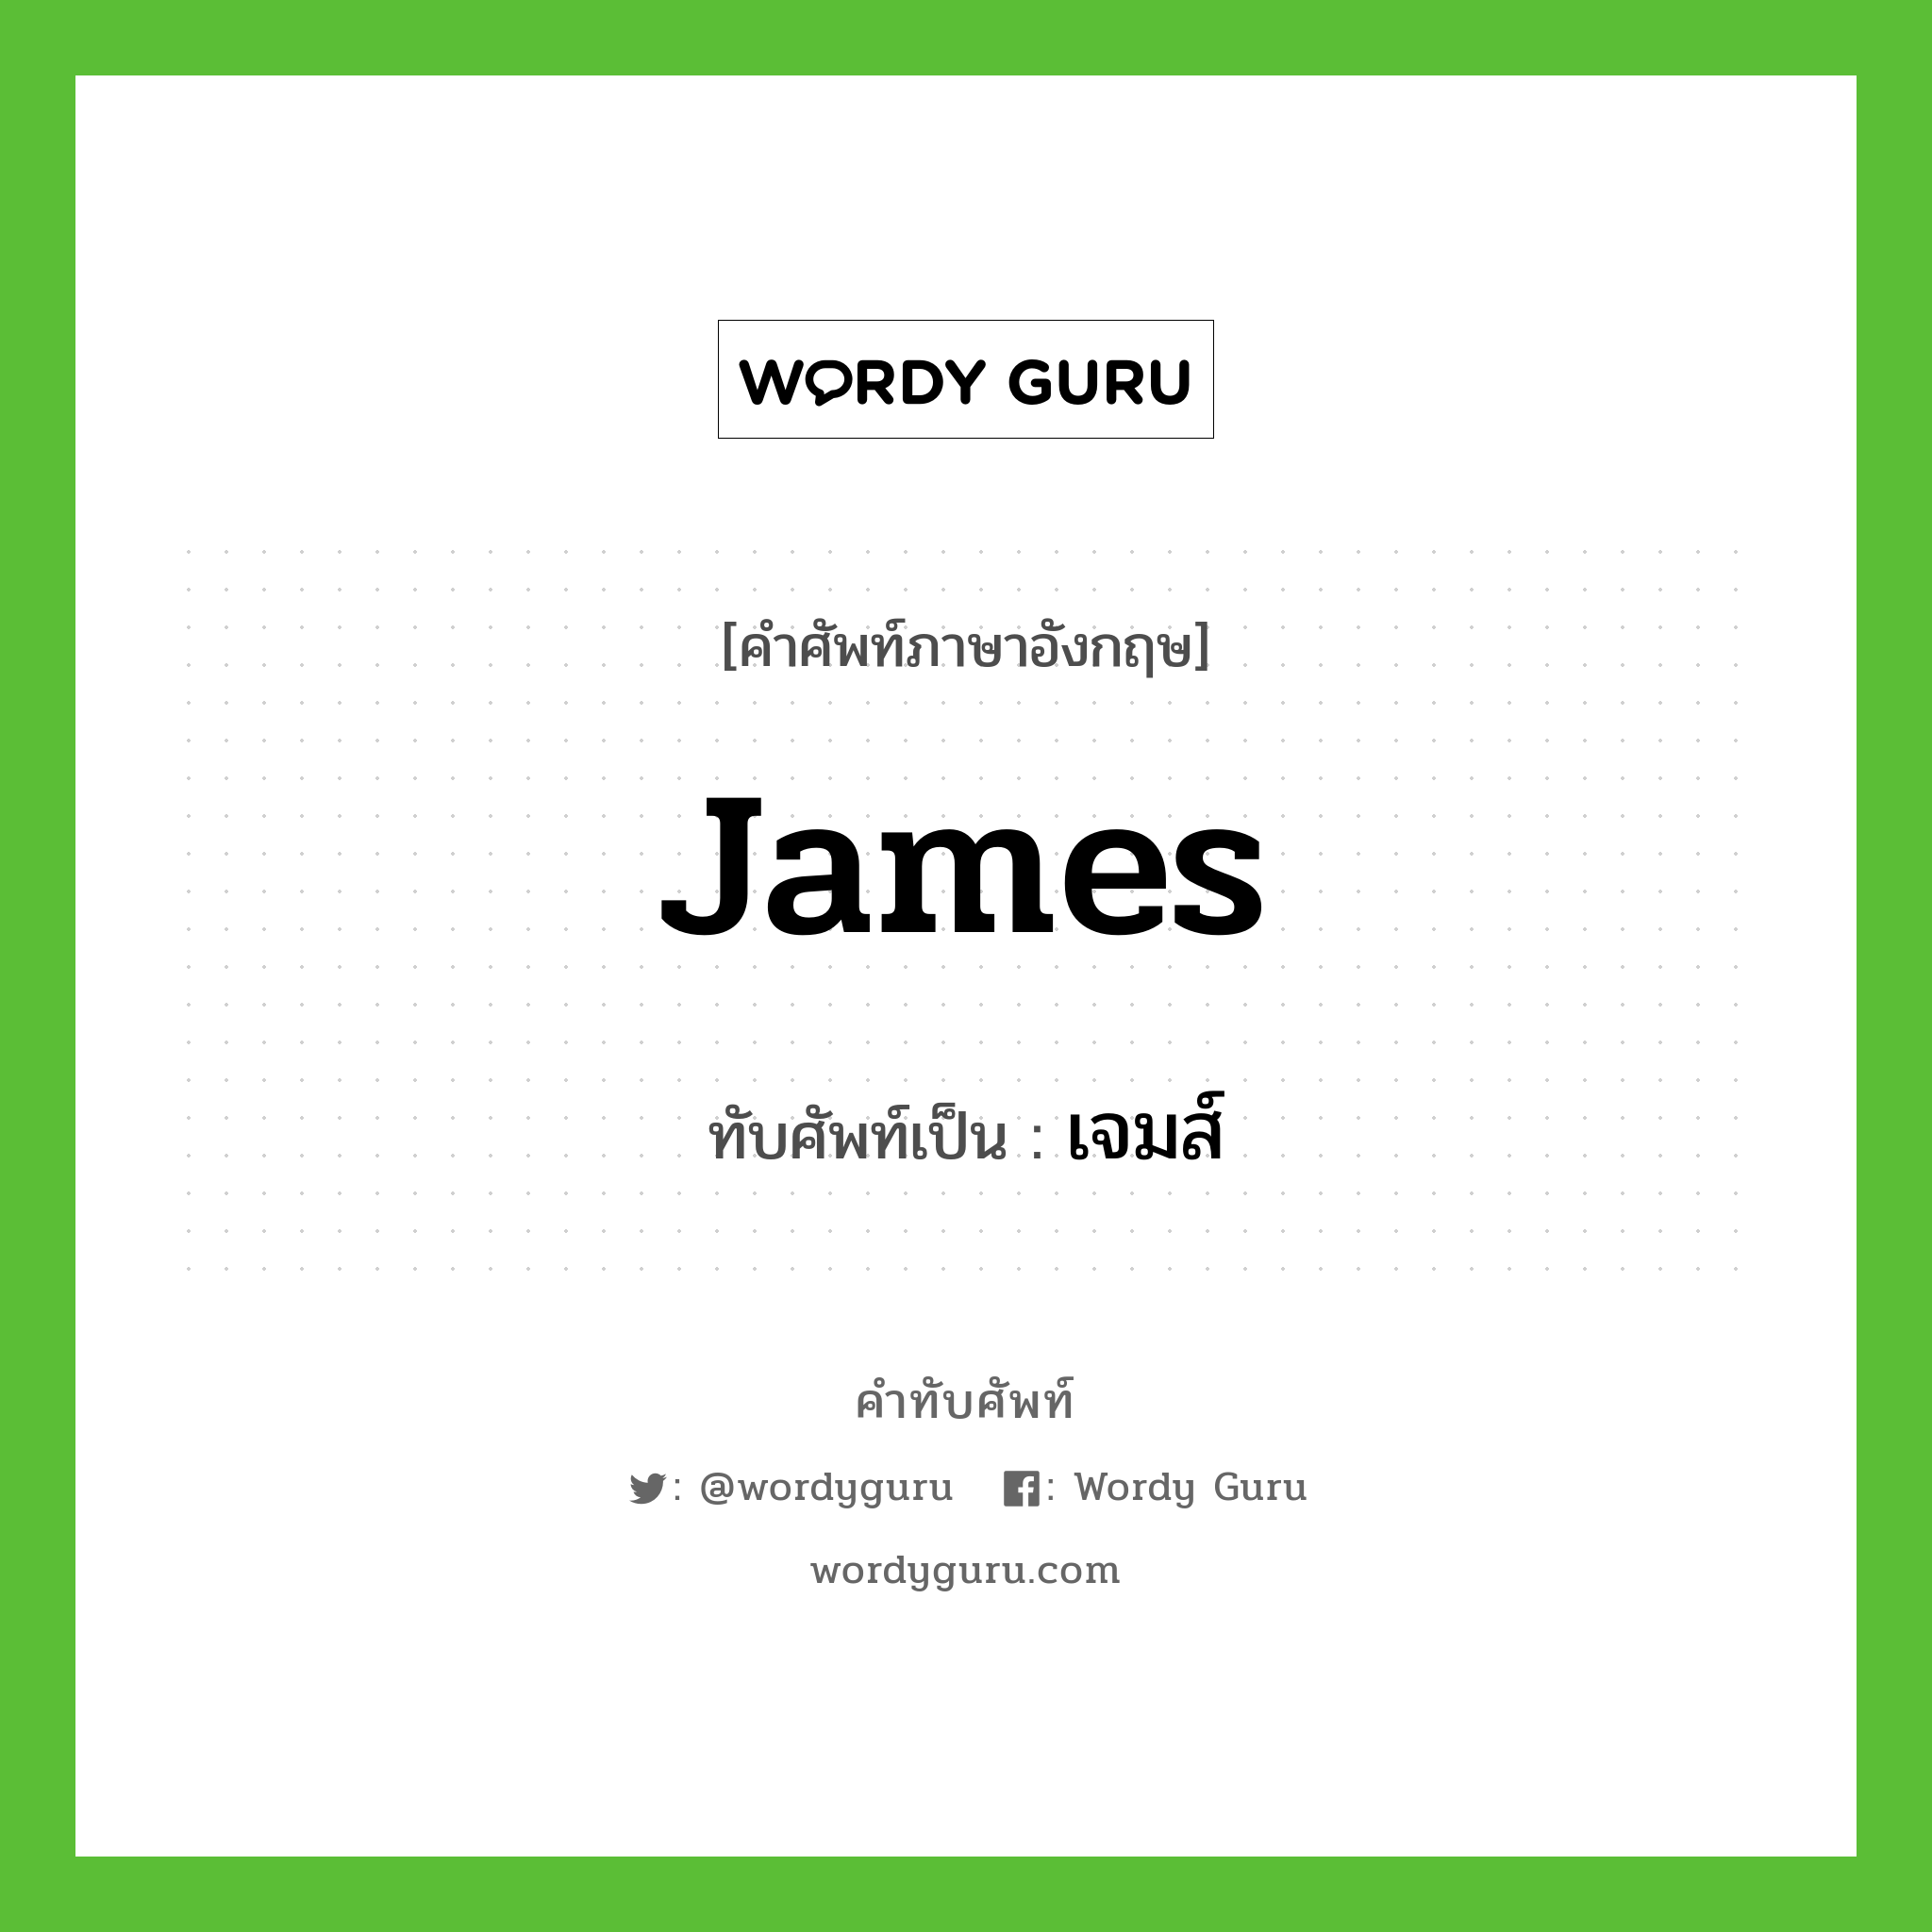 James เขียนเป็นคำไทยว่าอะไร?, คำศัพท์ภาษาอังกฤษ James ทับศัพท์เป็น เจมส์